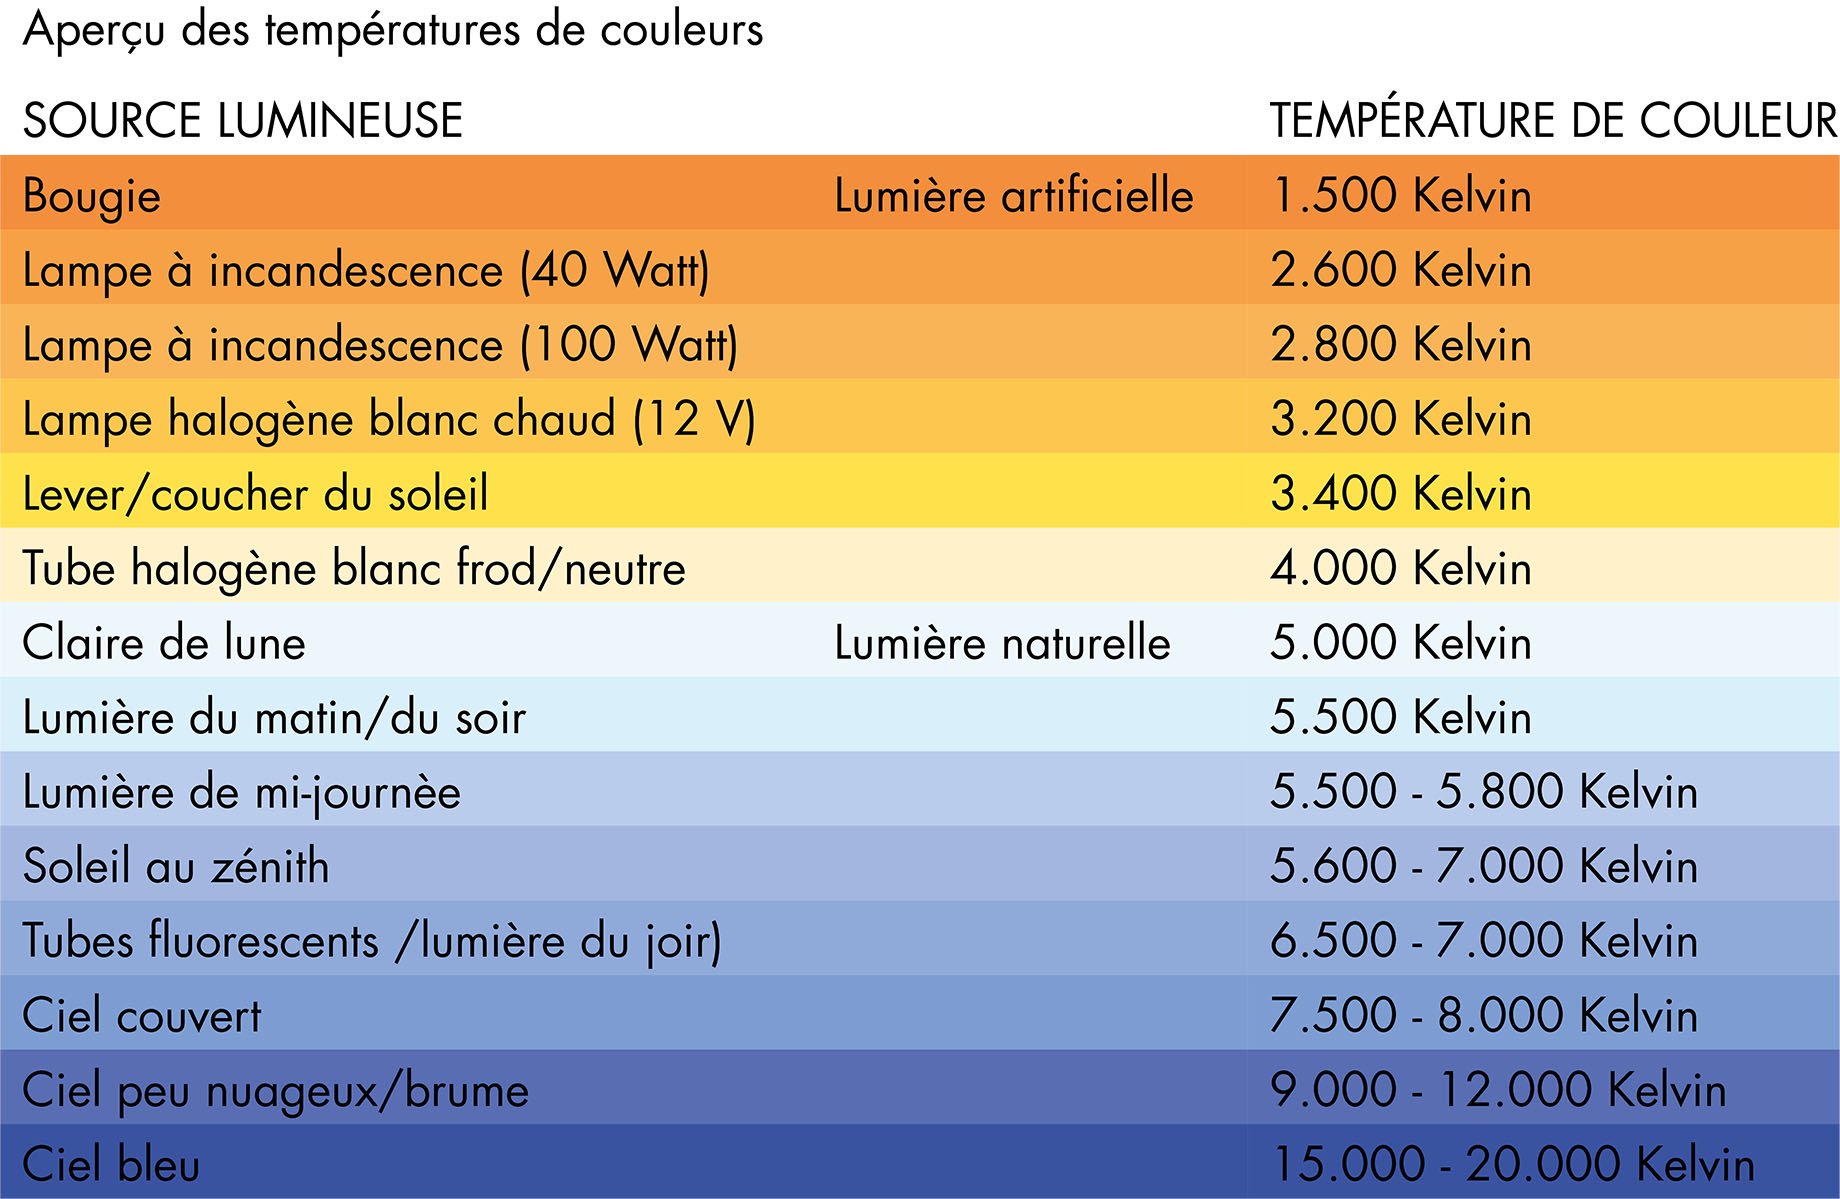 Planification éclairage - température de couleur et source lumineuse